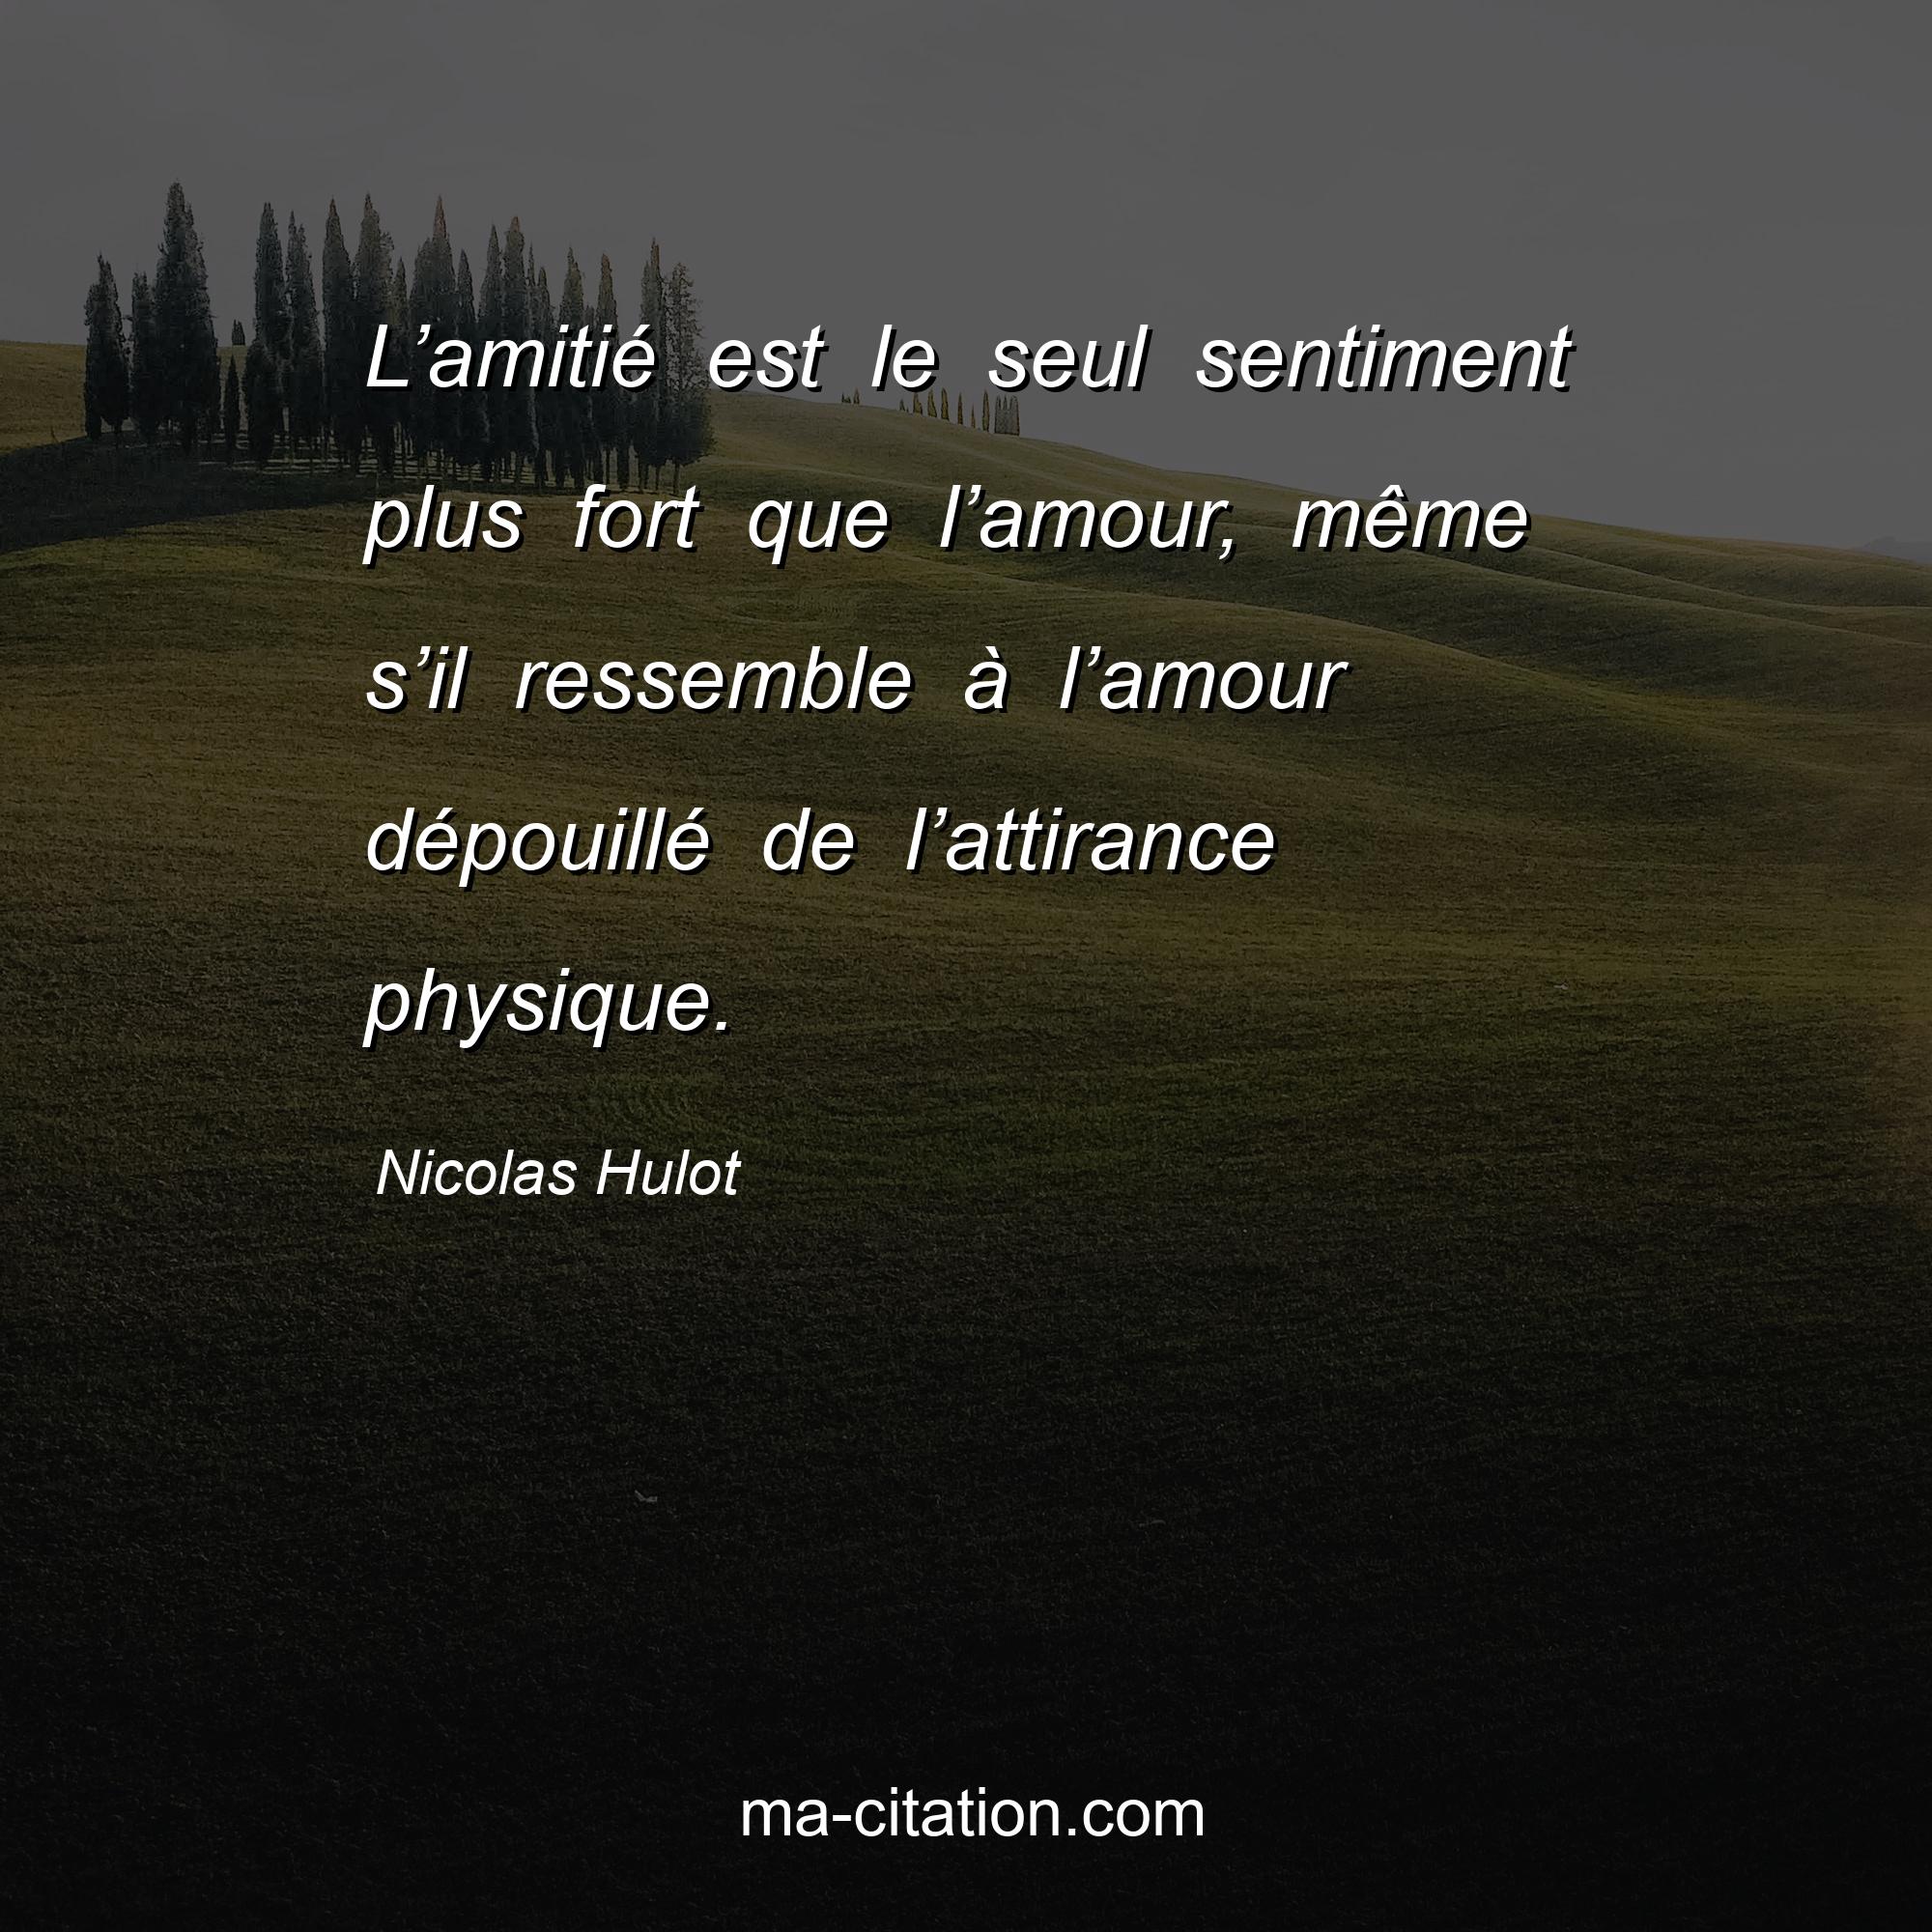 Nicolas Hulot : L’amitié est le seul sentiment plus fort que l’amour, même s’il ressemble à l’amour dépouillé de l’attirance physique.